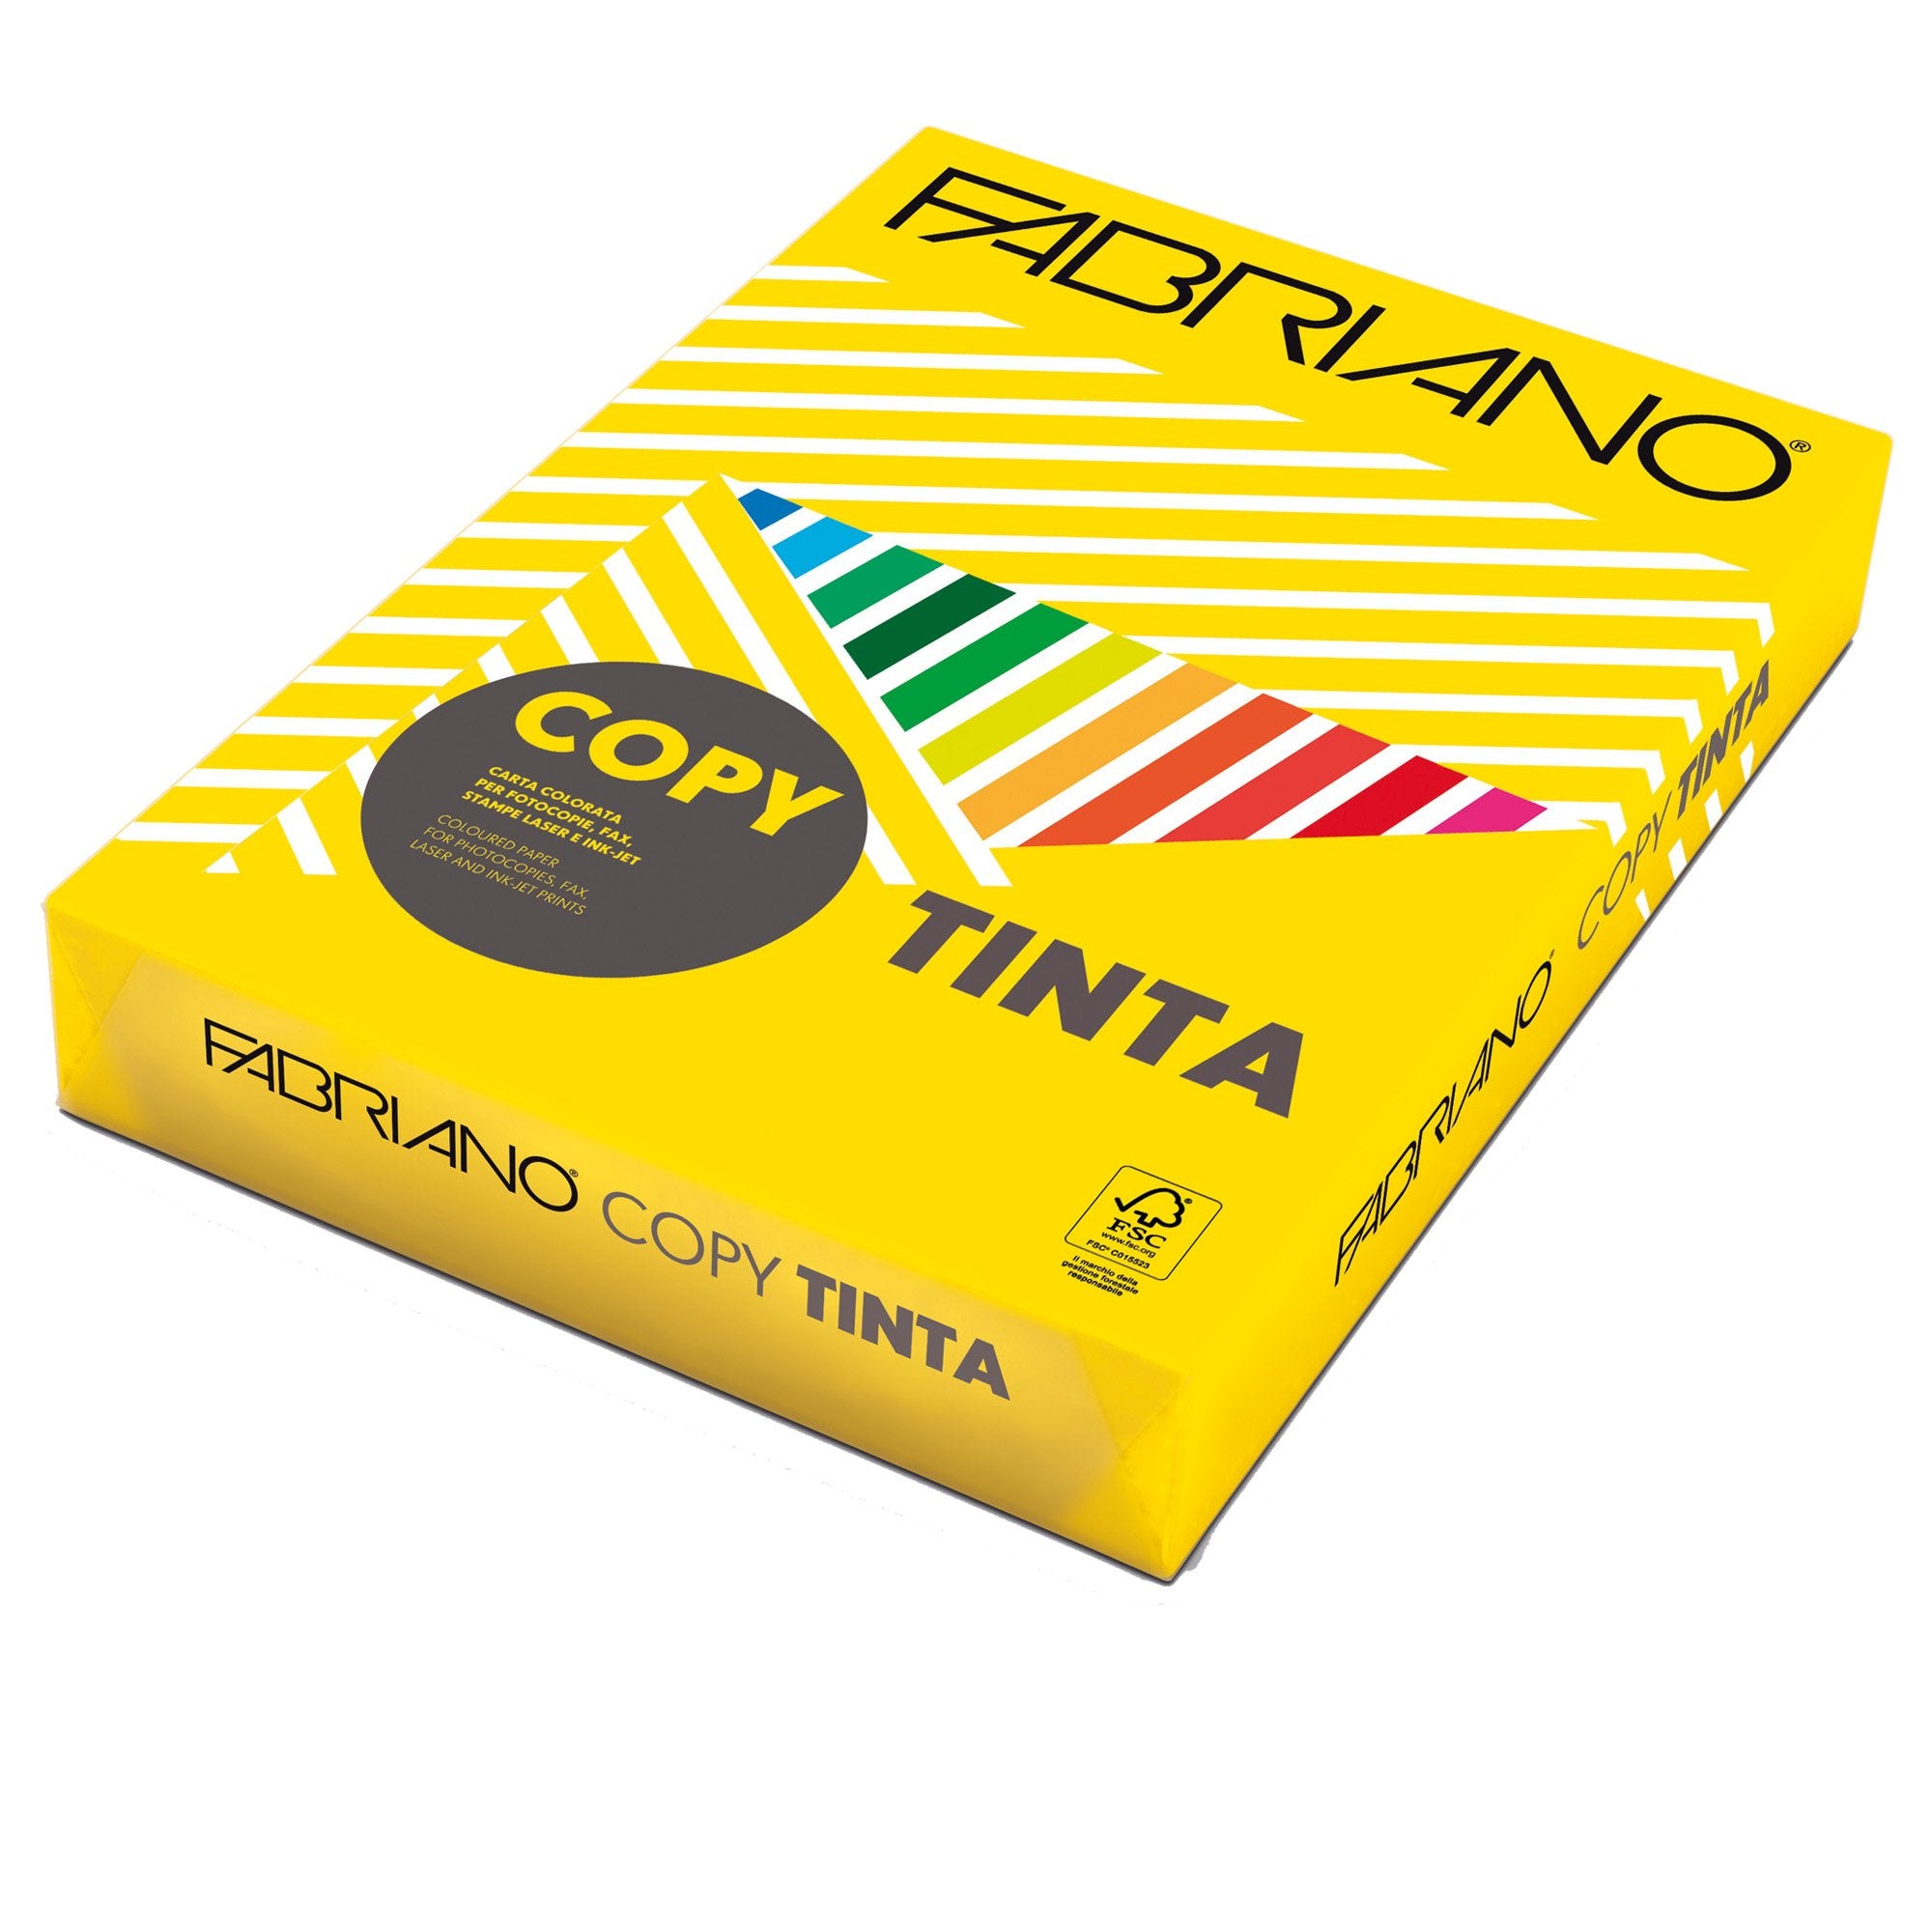 fabriano-carta-copy-tinta-a3-160gr-125fg-col-forti-giallo